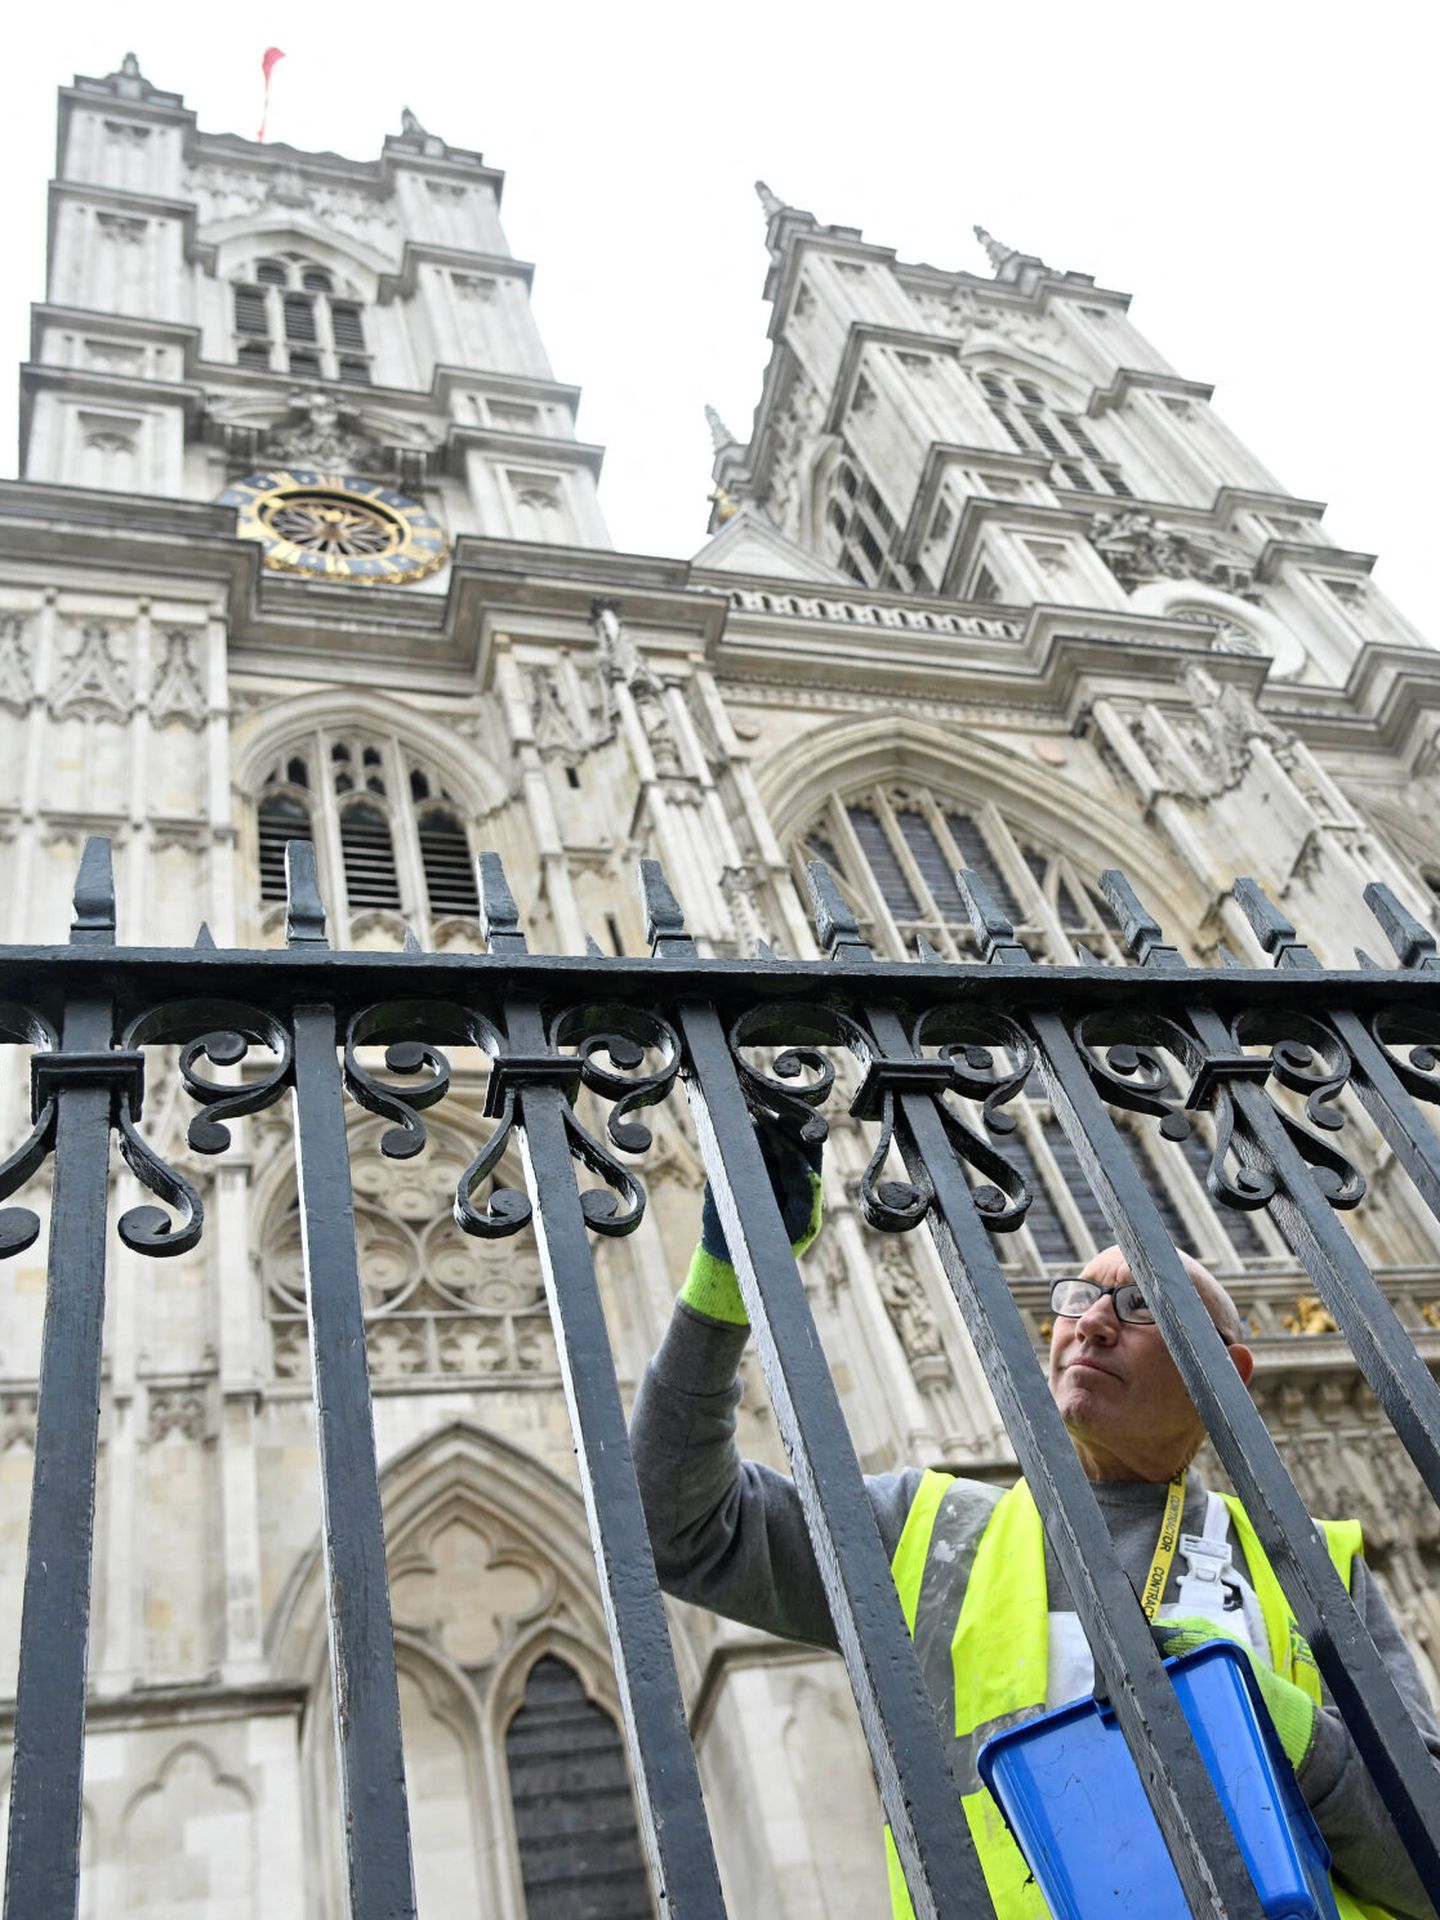 La abadía de Westminster. (Reuters/Toby Melville)